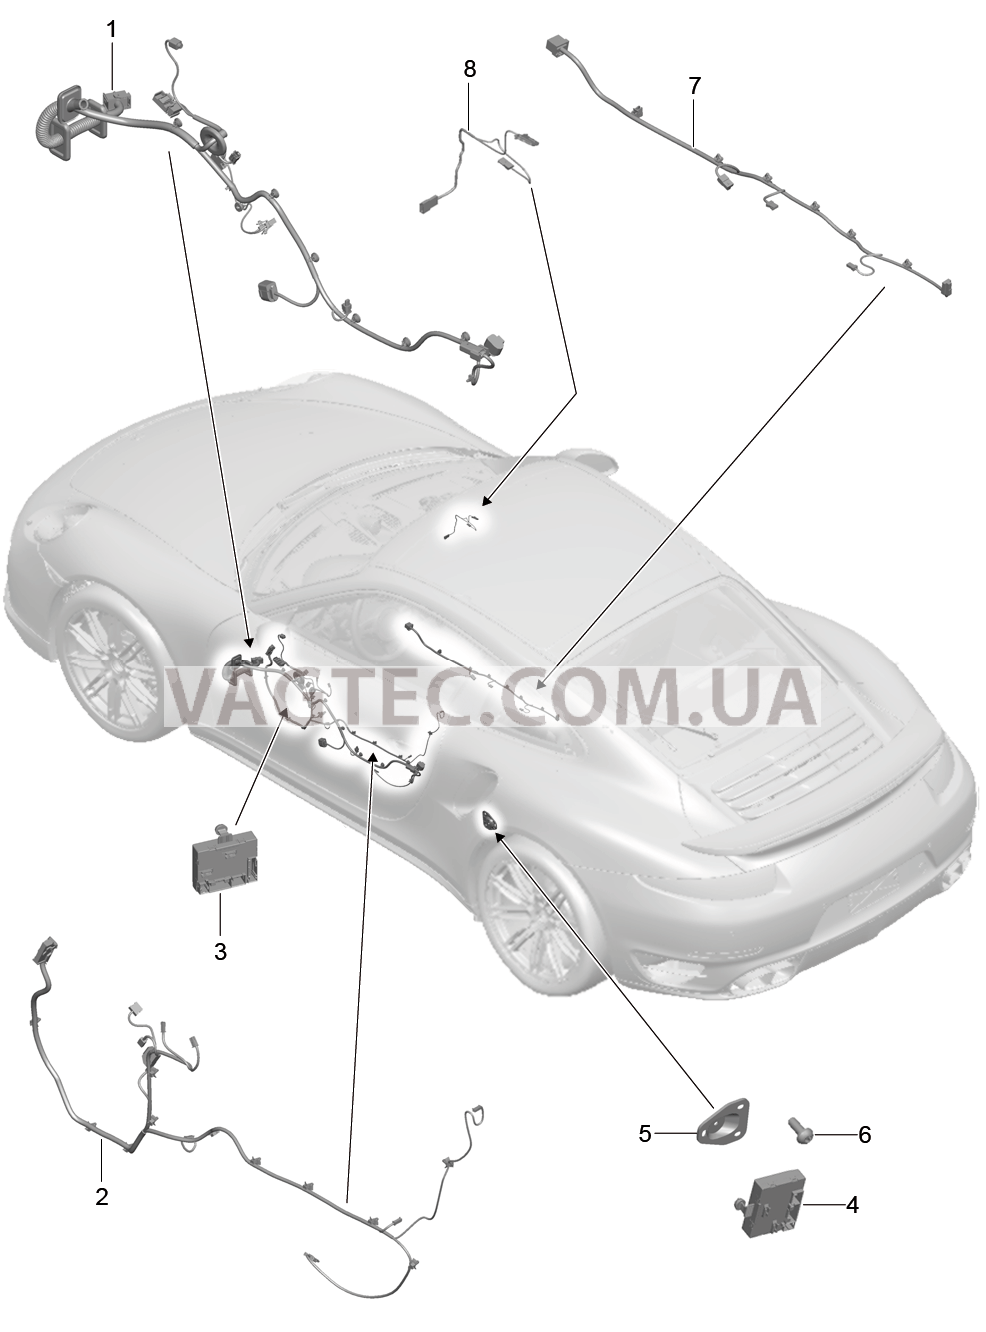 902-016 Жгуты проводов, Двери, Центральная консоль, Блок управления, Двери, Управление складным верхом для PORSCHE Porsche991Turbo 2014-2017USA